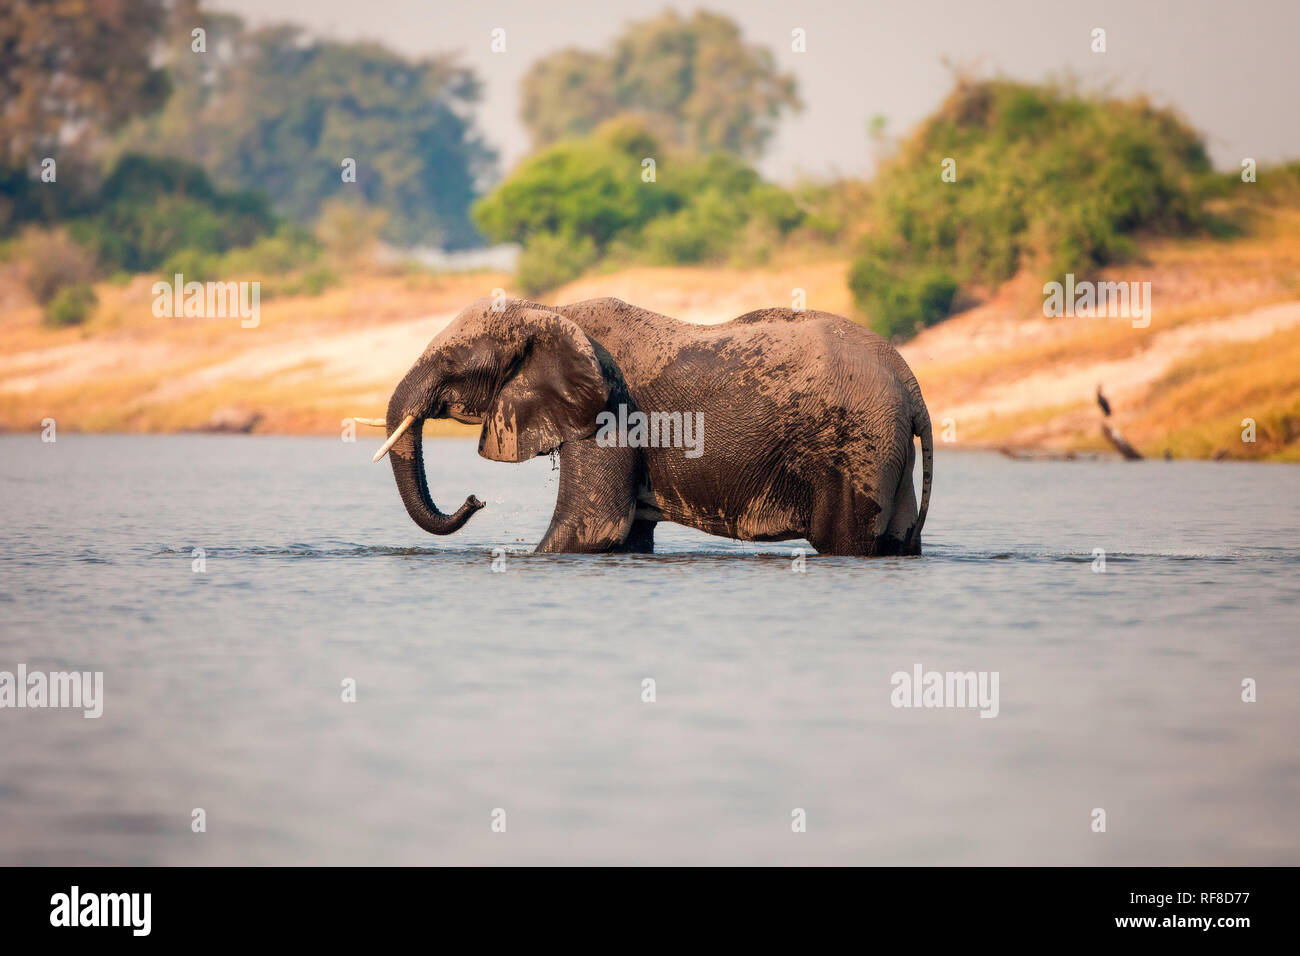 Ein Elefant, Loxodonta africana, steht Knietief im Wasser, nassen Körper, Rumpf sprays Wasser, entfernt. Stockfoto